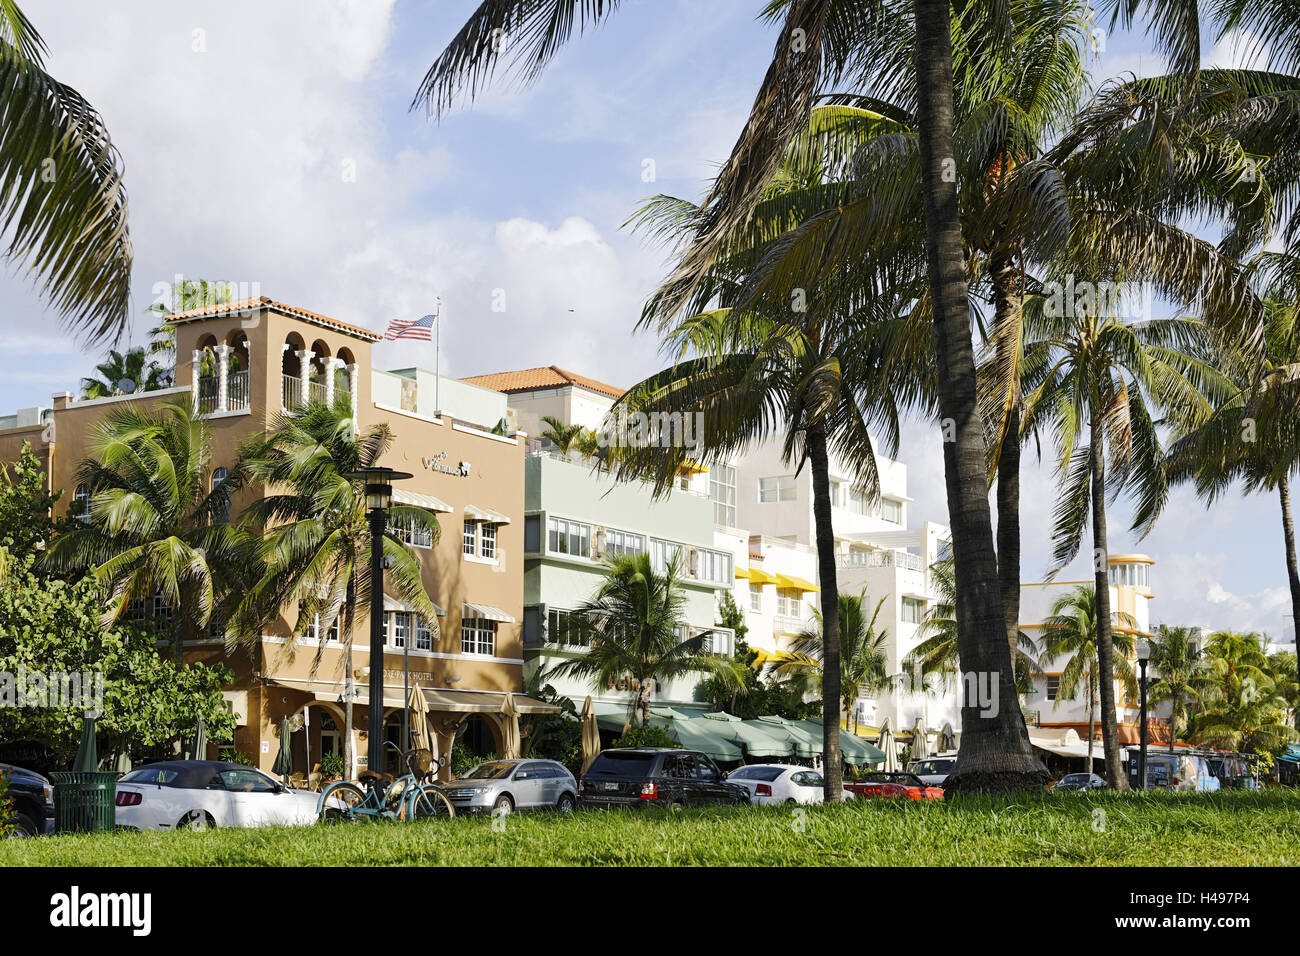 Genre de déco hôtels dans l'Ocean Drive, Miami South Beach, genre de déco, Florida, USA, Banque D'Images